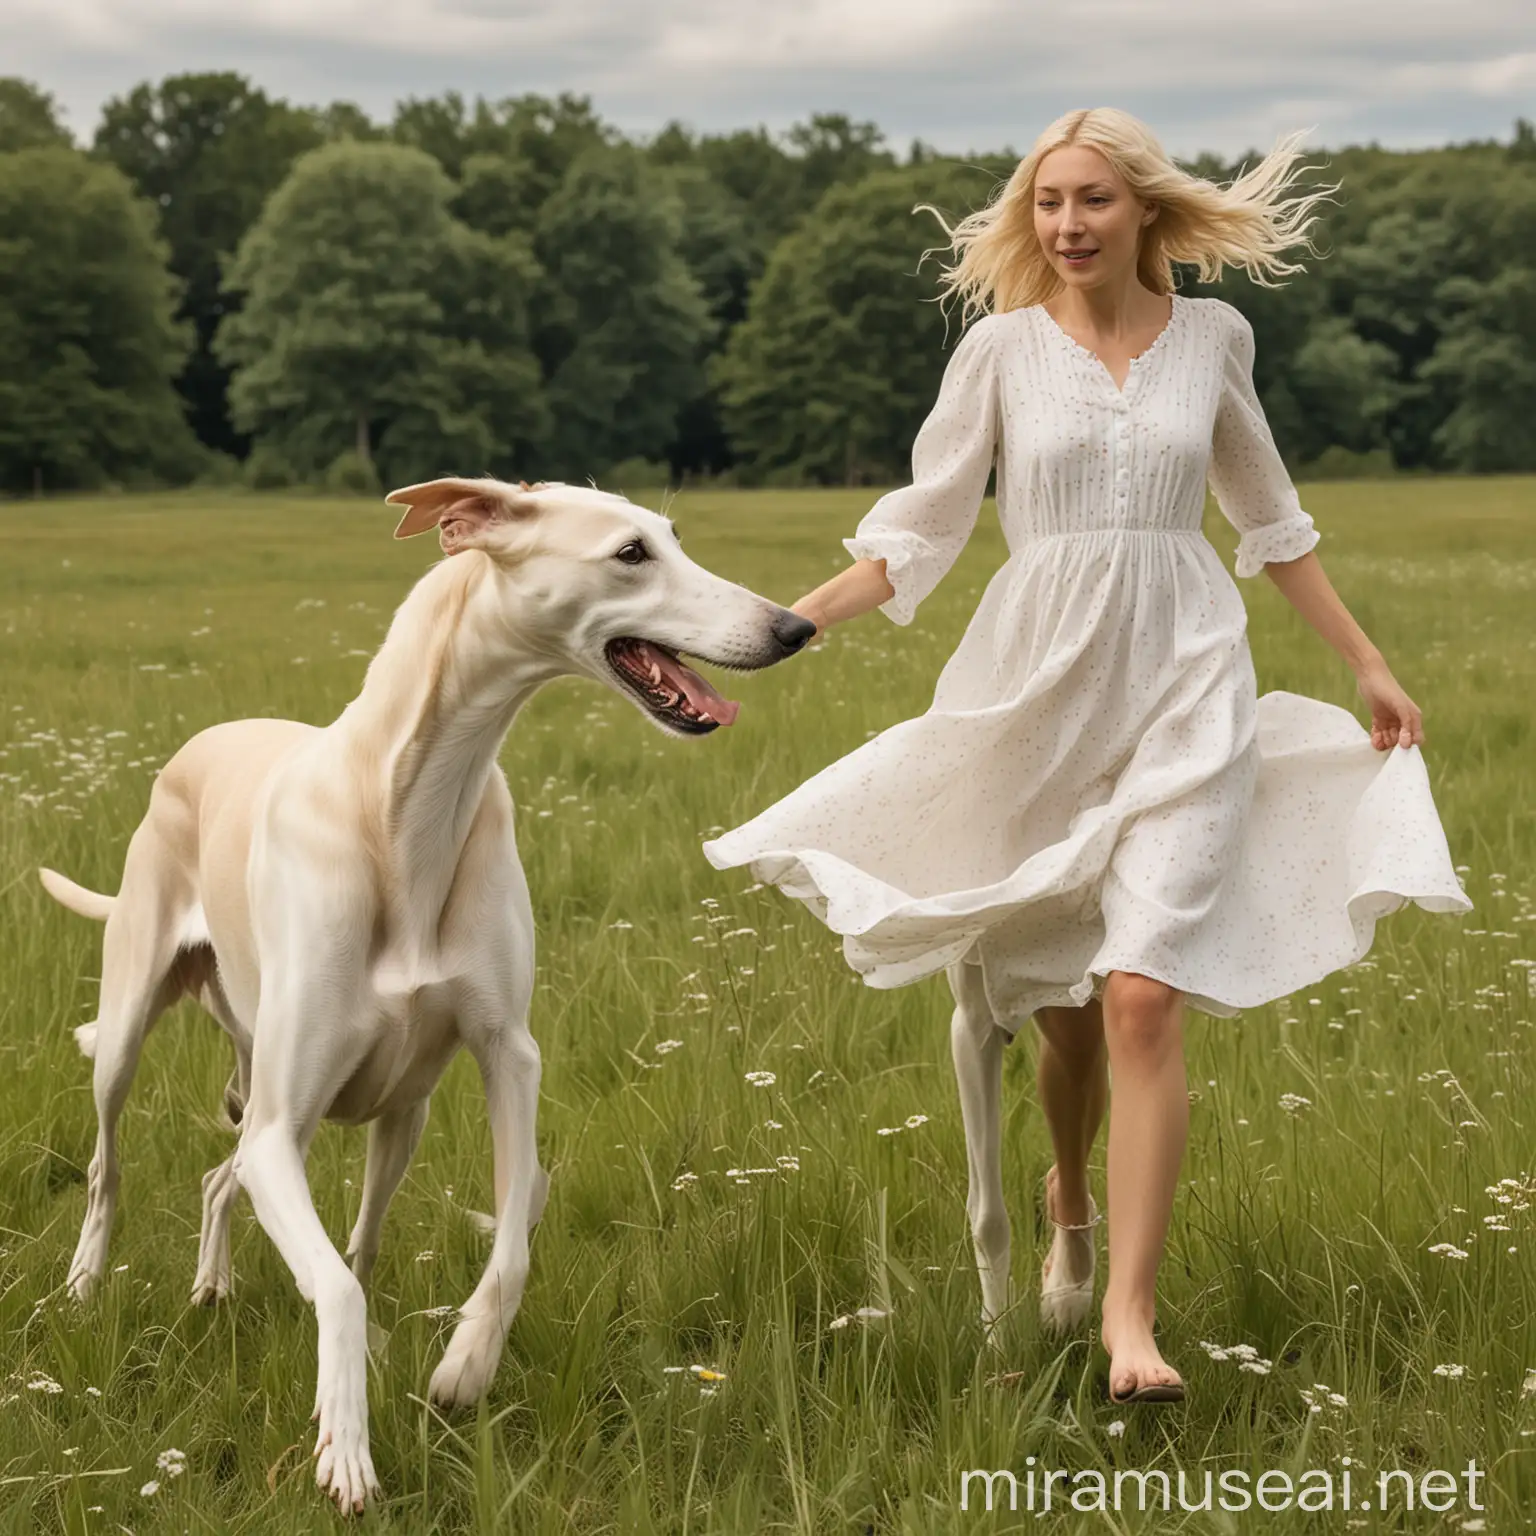 Weißer Windhund lauft mit Frau über eine Wiese, beide von hinten sichbar, Frau hat kinnlange blonde Haare, sie trägt ein weißes Sommerkleid